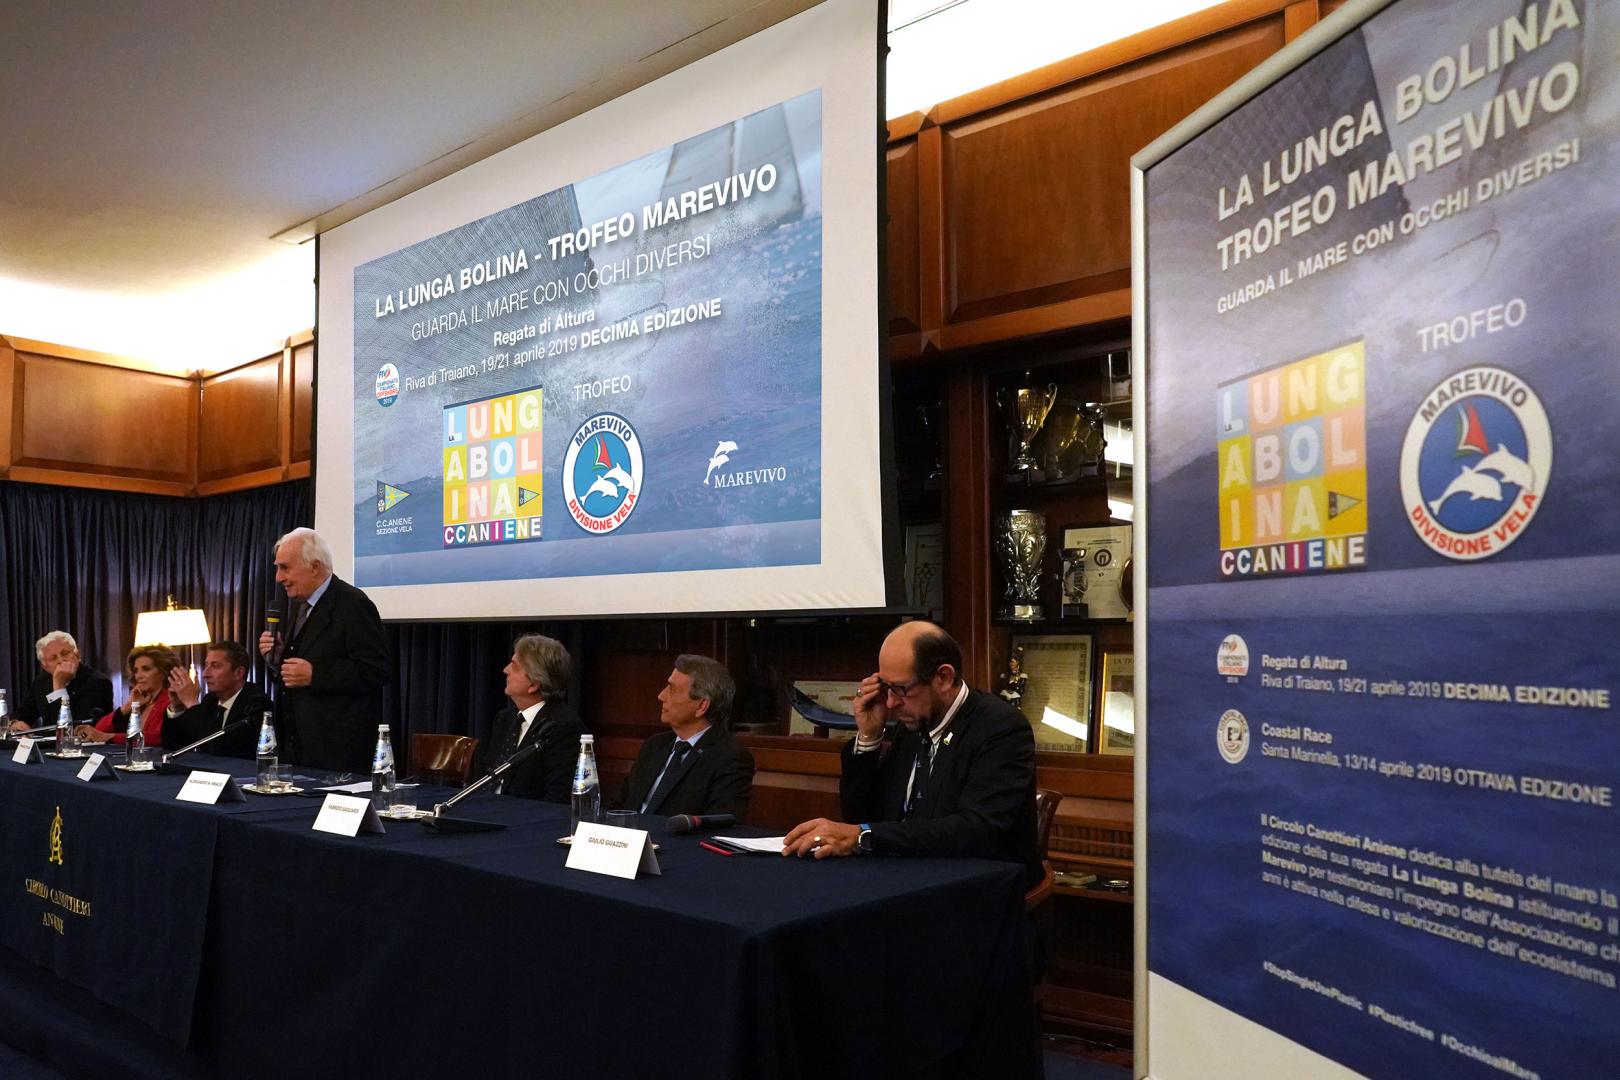 Conferenza stampa di presentazione de La Lunga Bolina - Trofeo Marevivo: “Una serata veramente speciale”